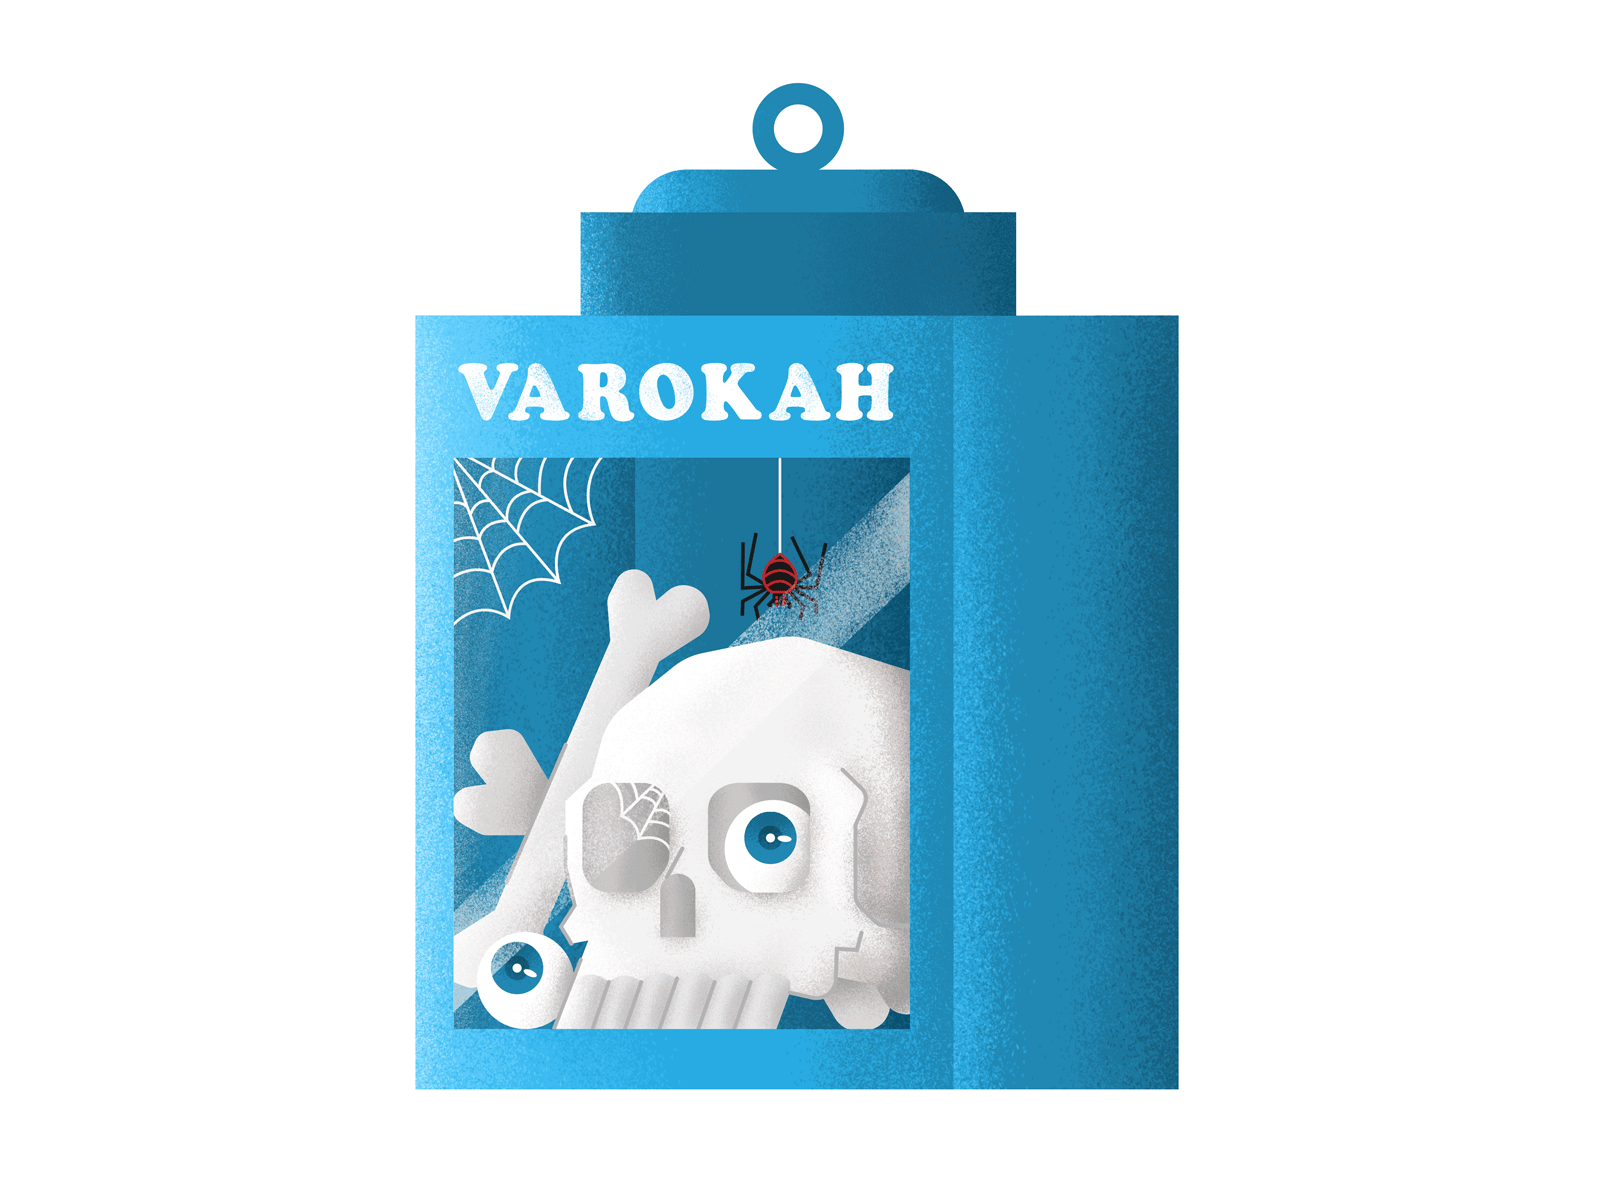 Varokah Cracker Box